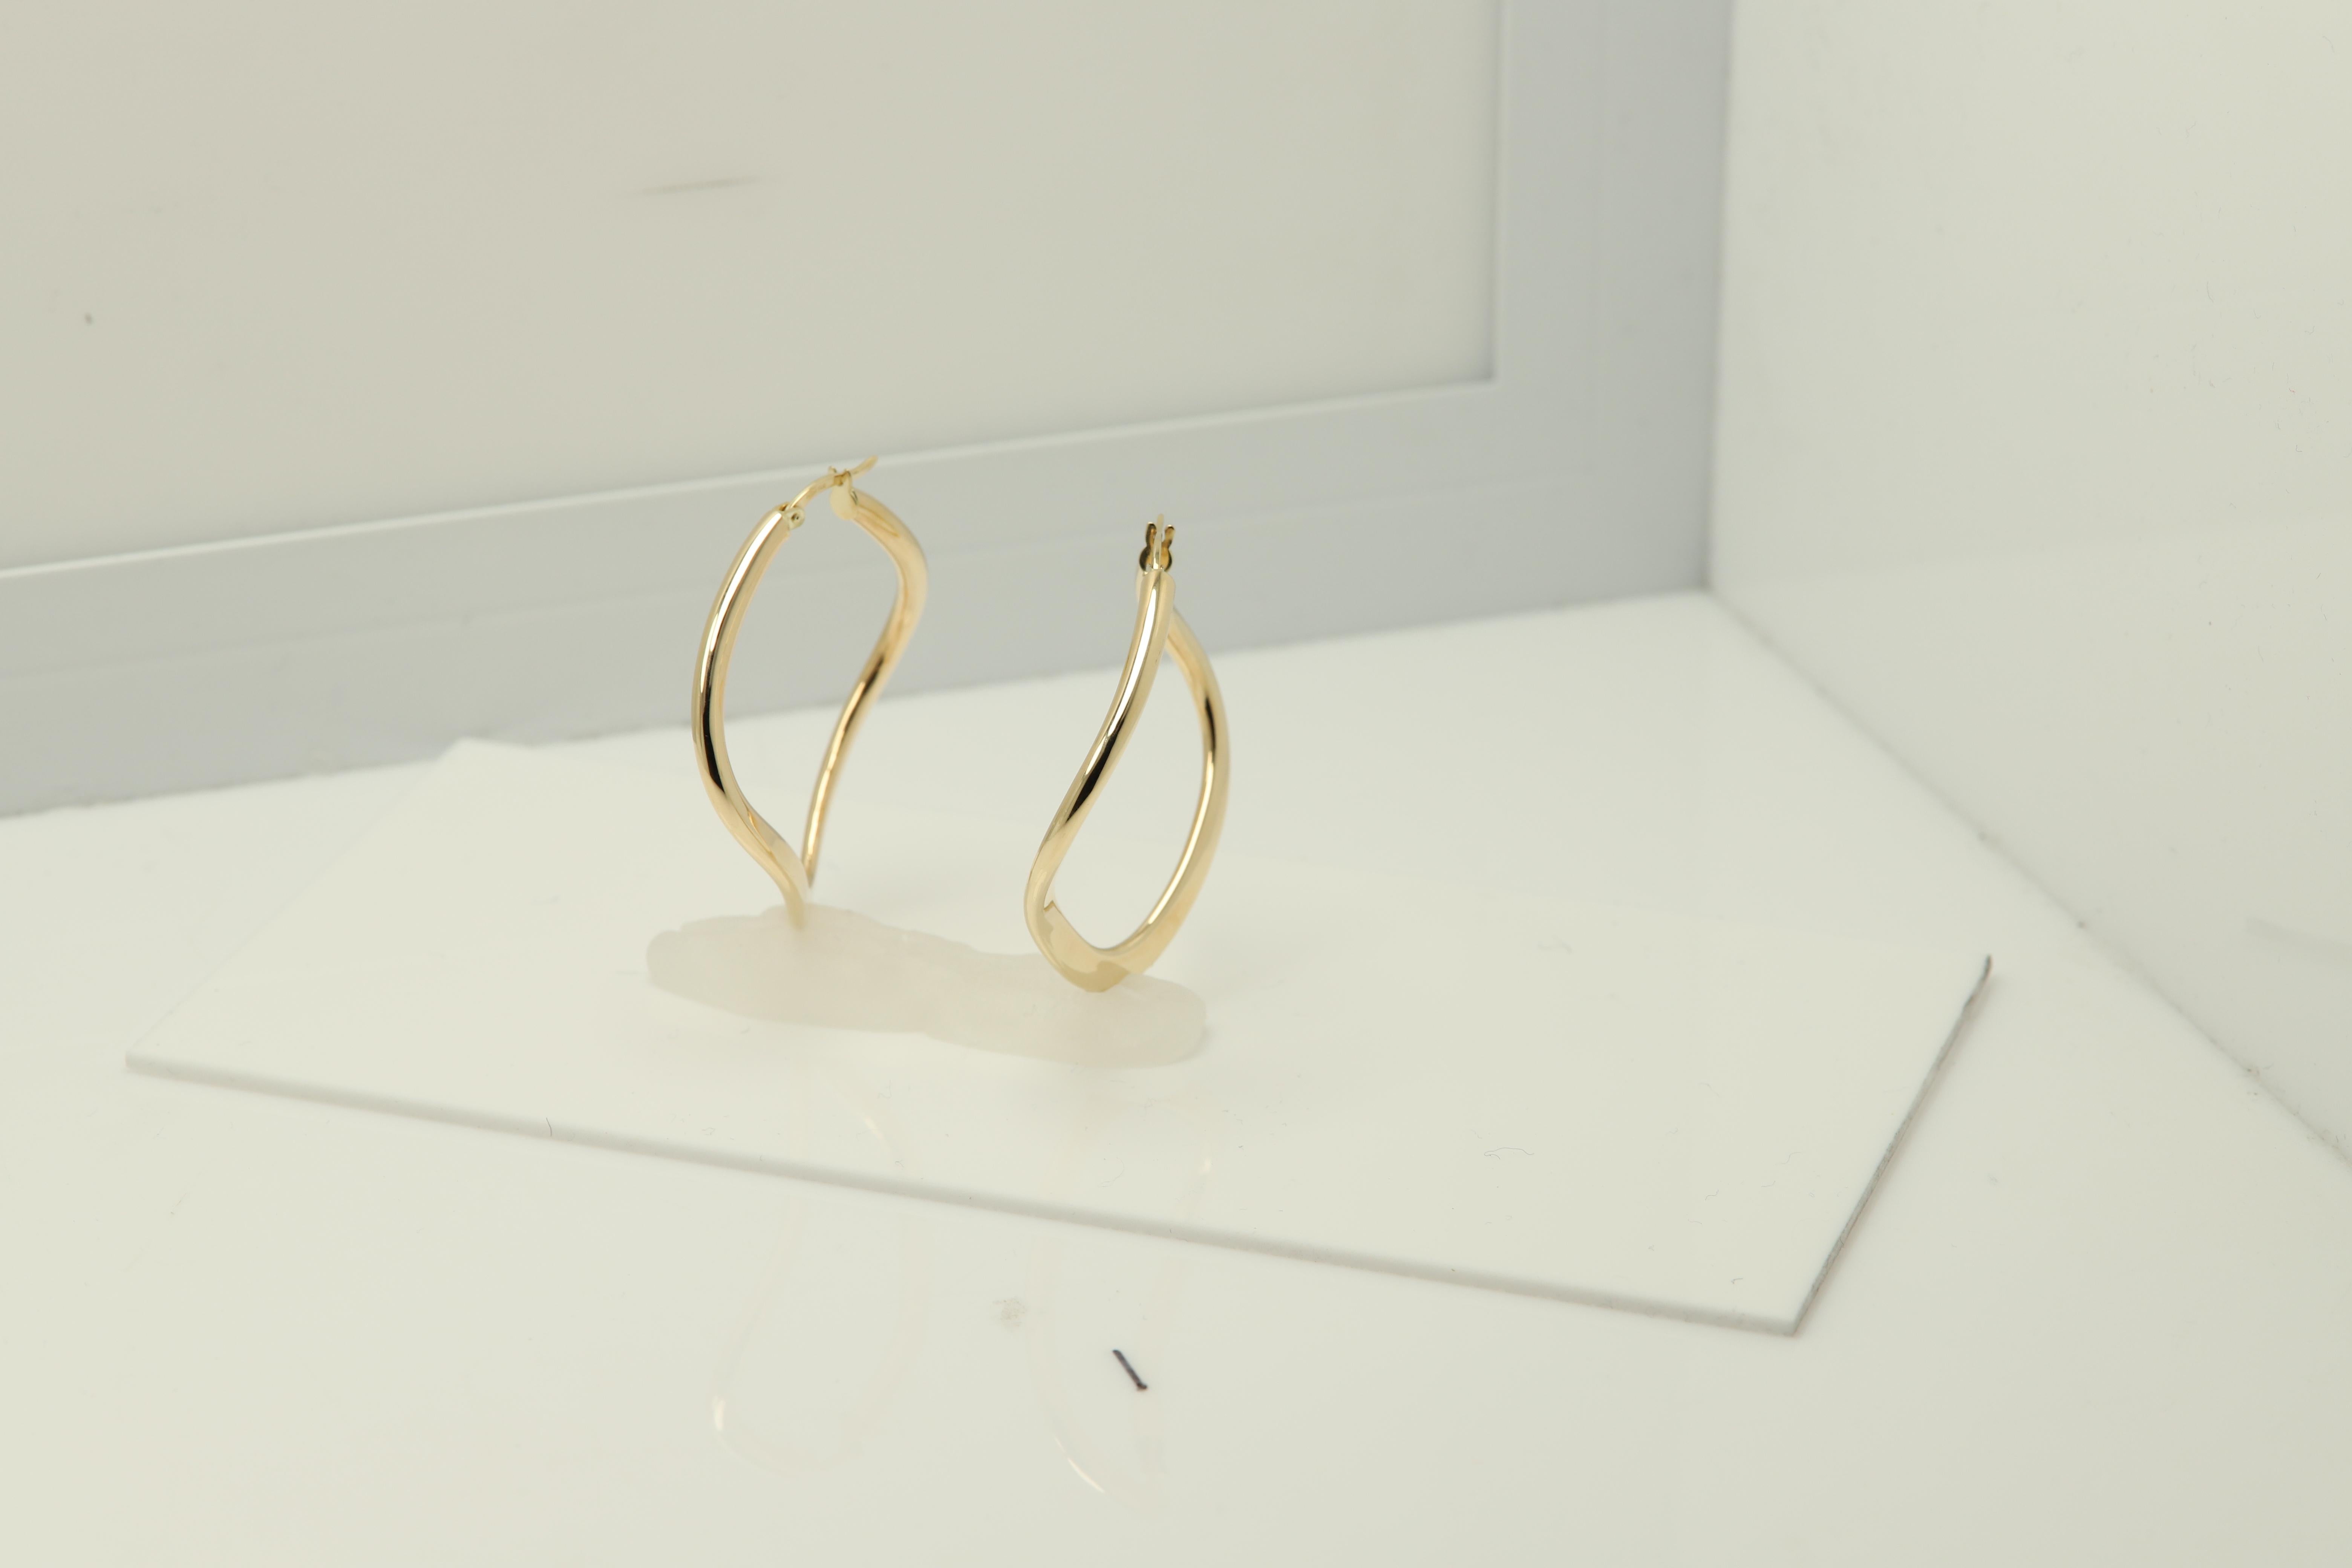 Swirl Curvy Italian Hoops 14 Karat Gold Earrings Gold Hoops Artistic Earrings In New Condition For Sale In Brooklyn, NY